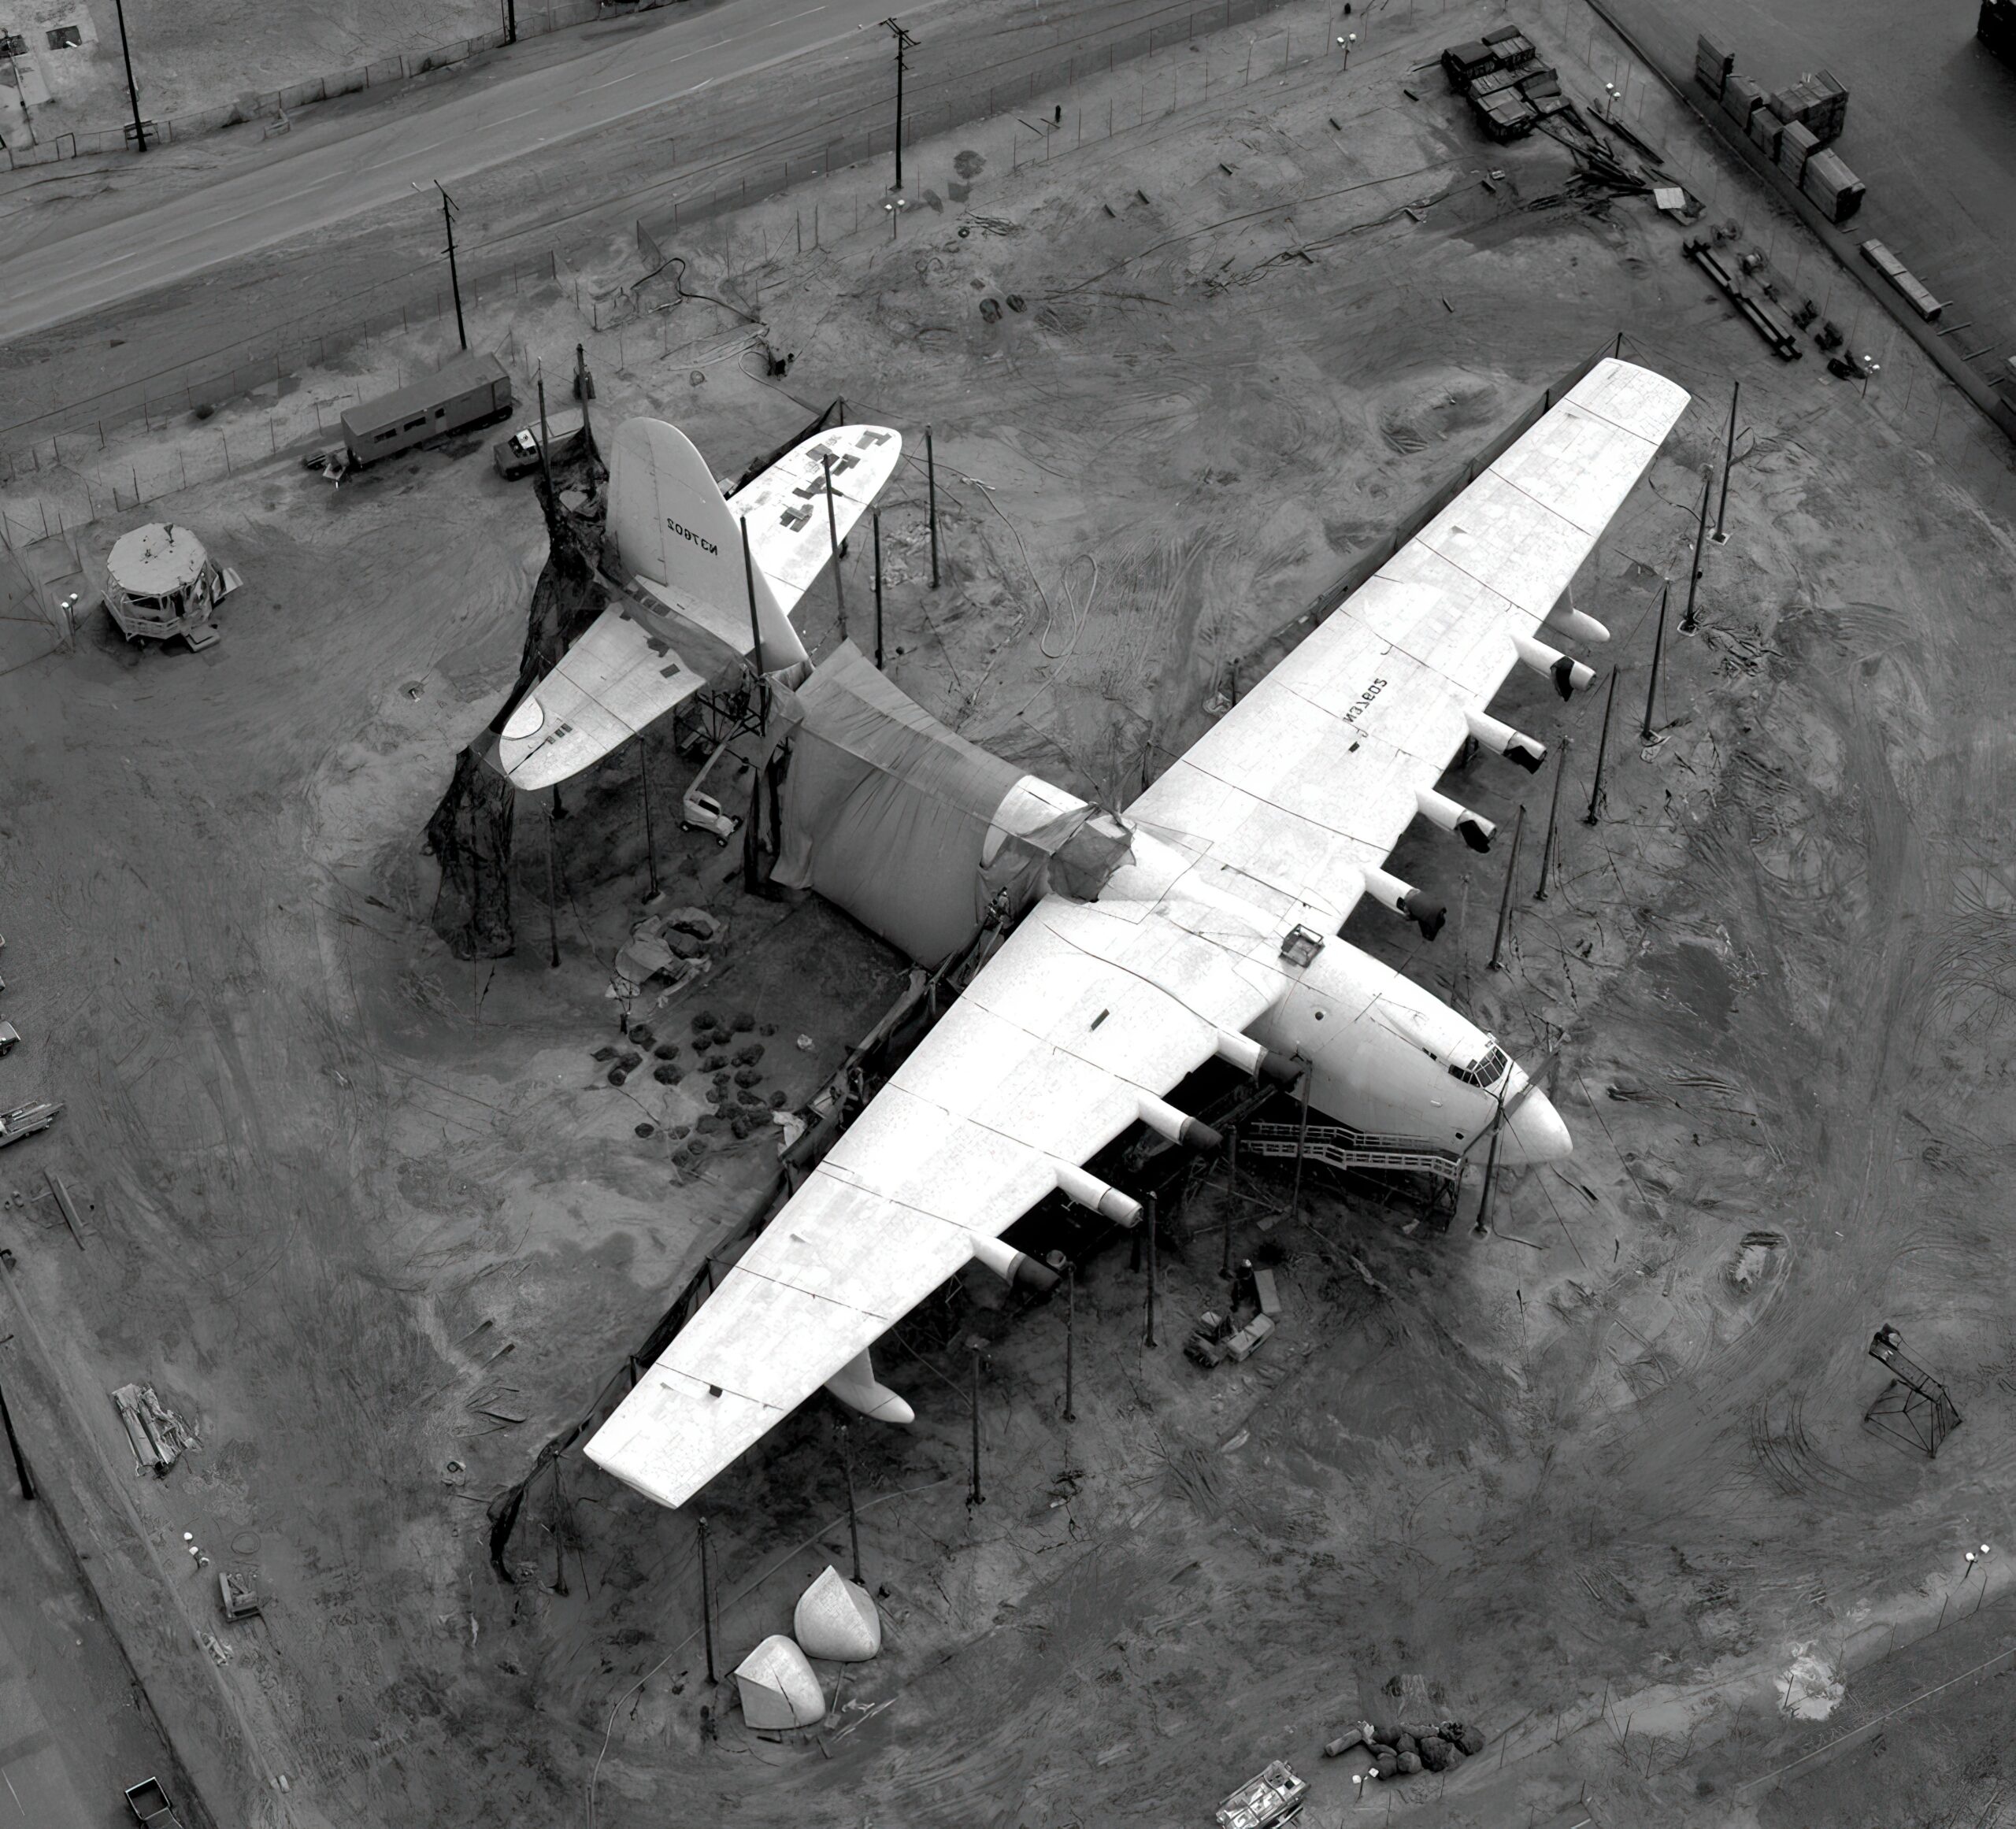 "Hercules" seaplane built by Howard Hughes